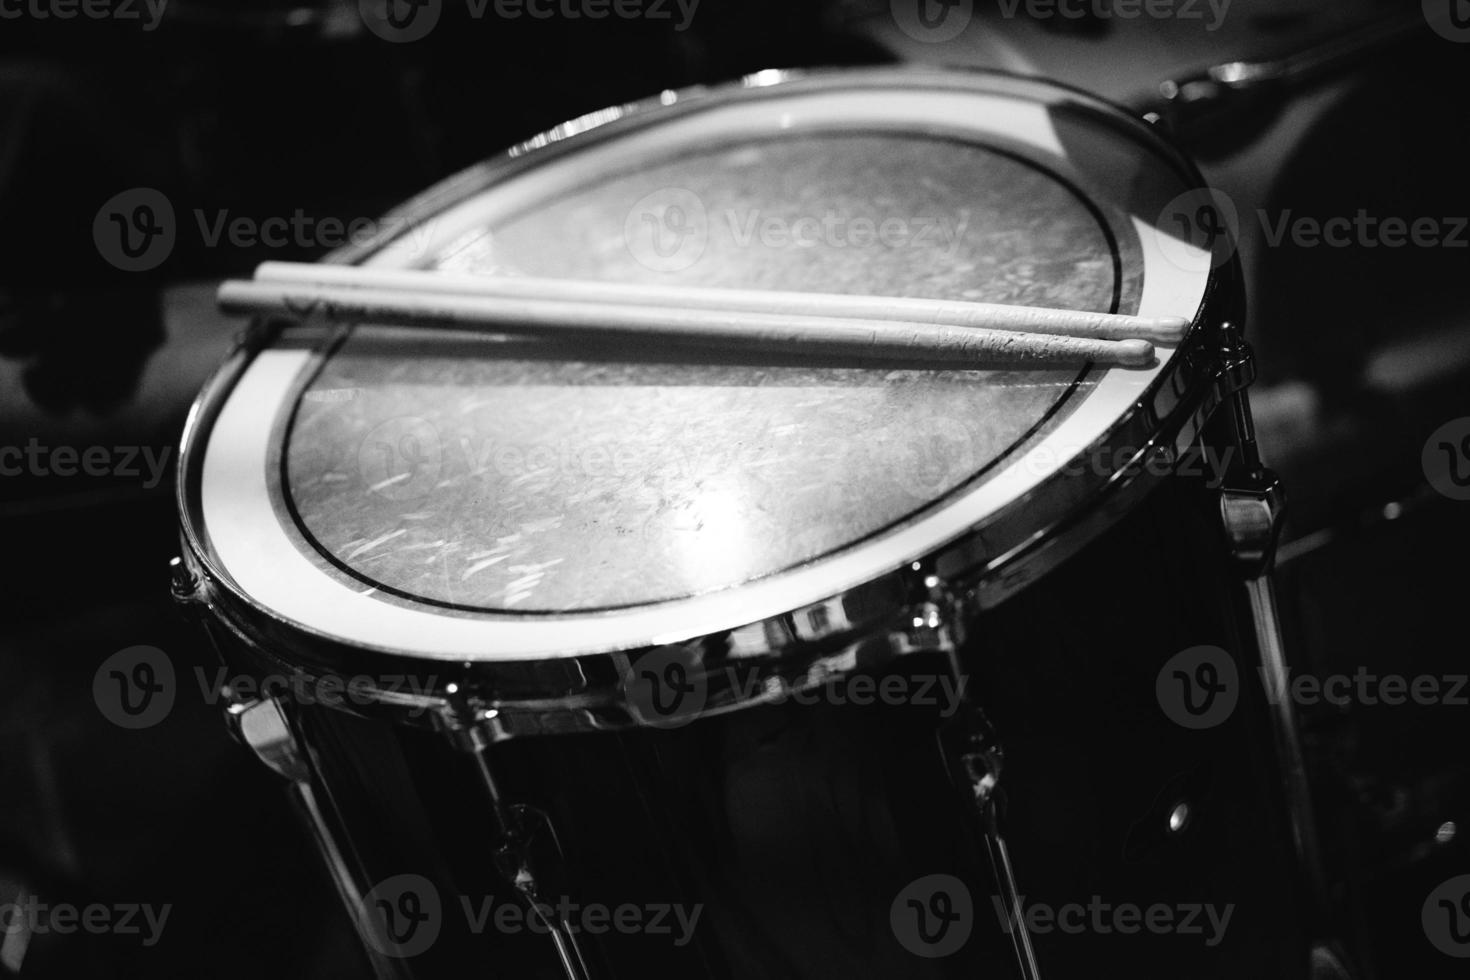 em um show de música, no intervalo da apresentação, coloque as baquetas no plástico do tambor. foto